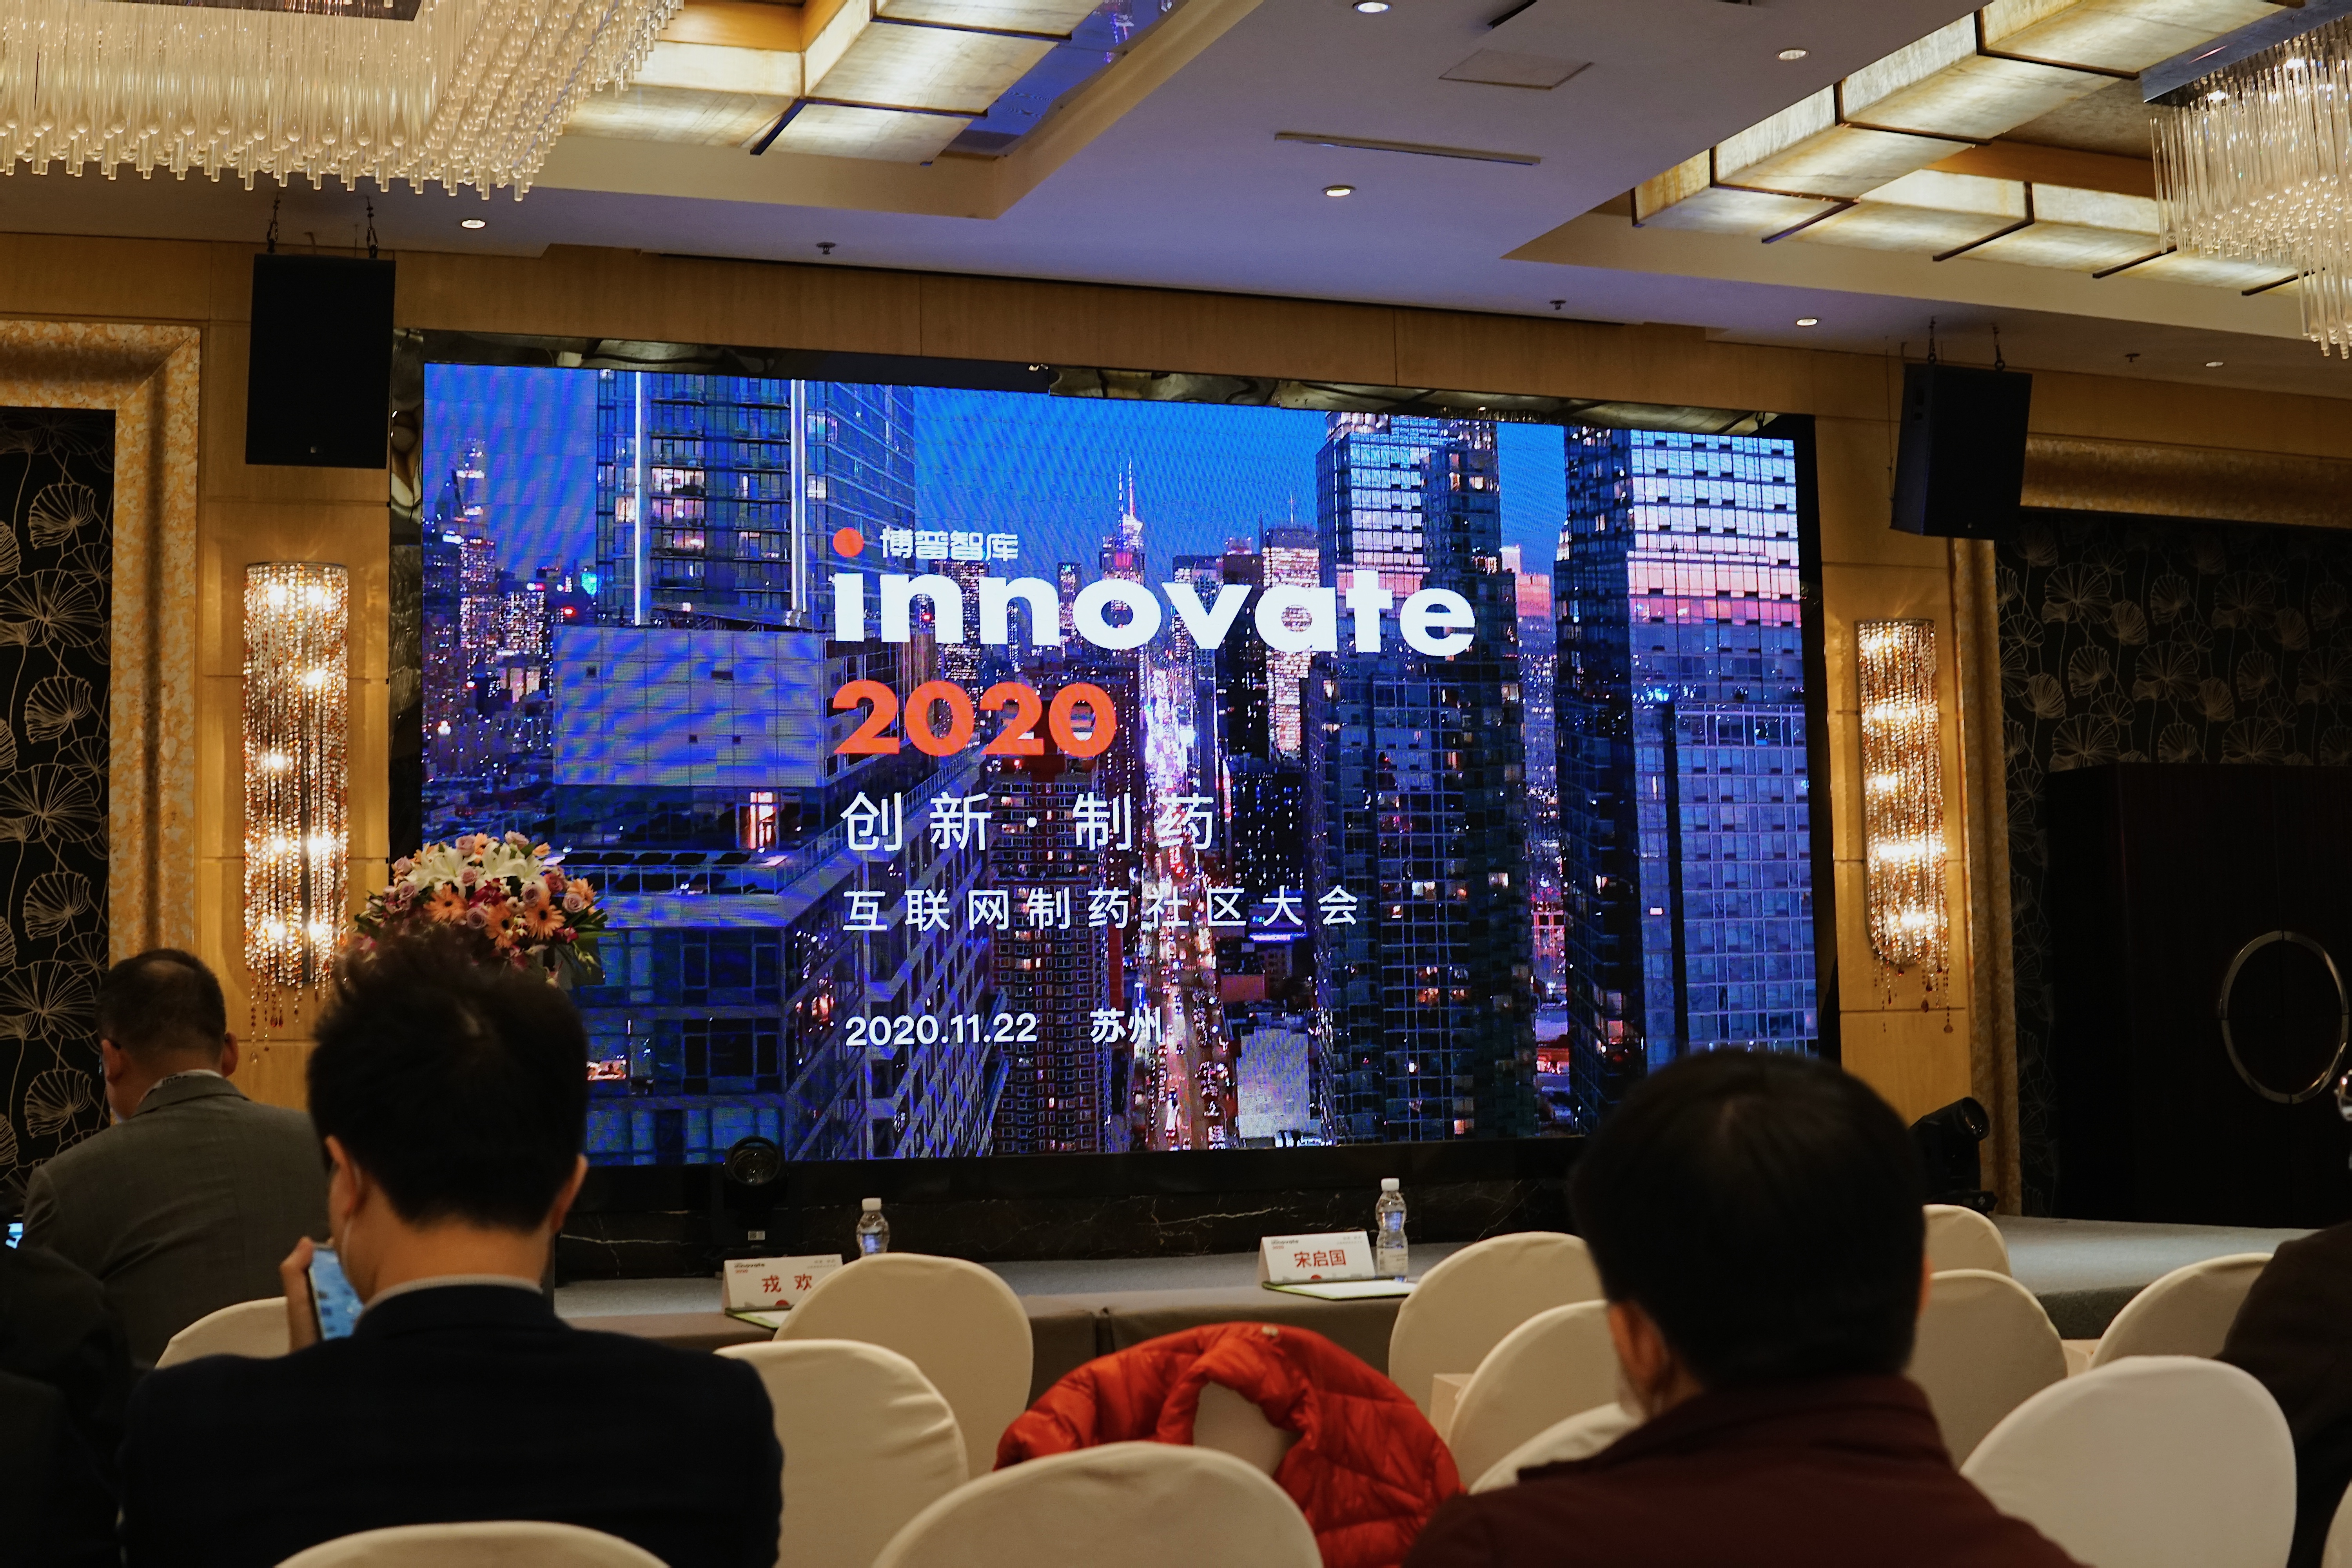 创新从不束手待命，交流凝聚行业力量——博普智库 innovate2020 完美结束！